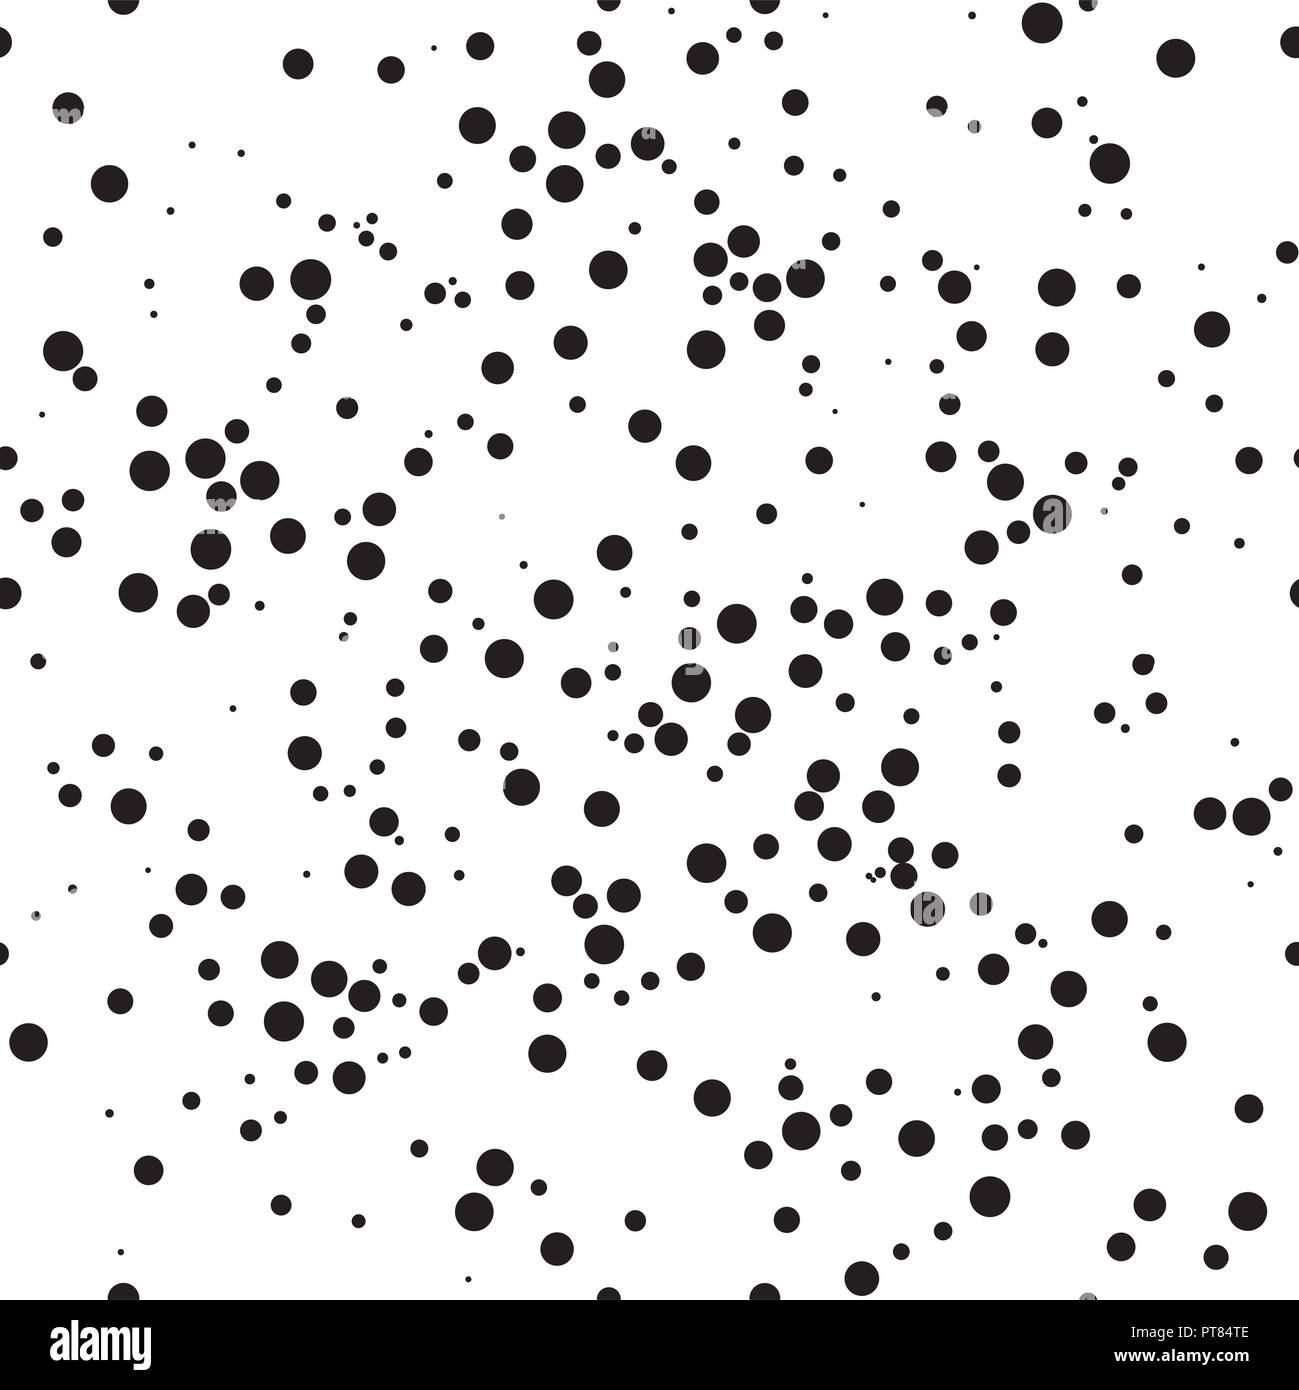 Vektor Zusammenfassung Hintergrund Muster mit Punkten. Nahtloser Hintergrund Textur. schwarze und weiße Punkt asymmetrisches Design Stock Vektor